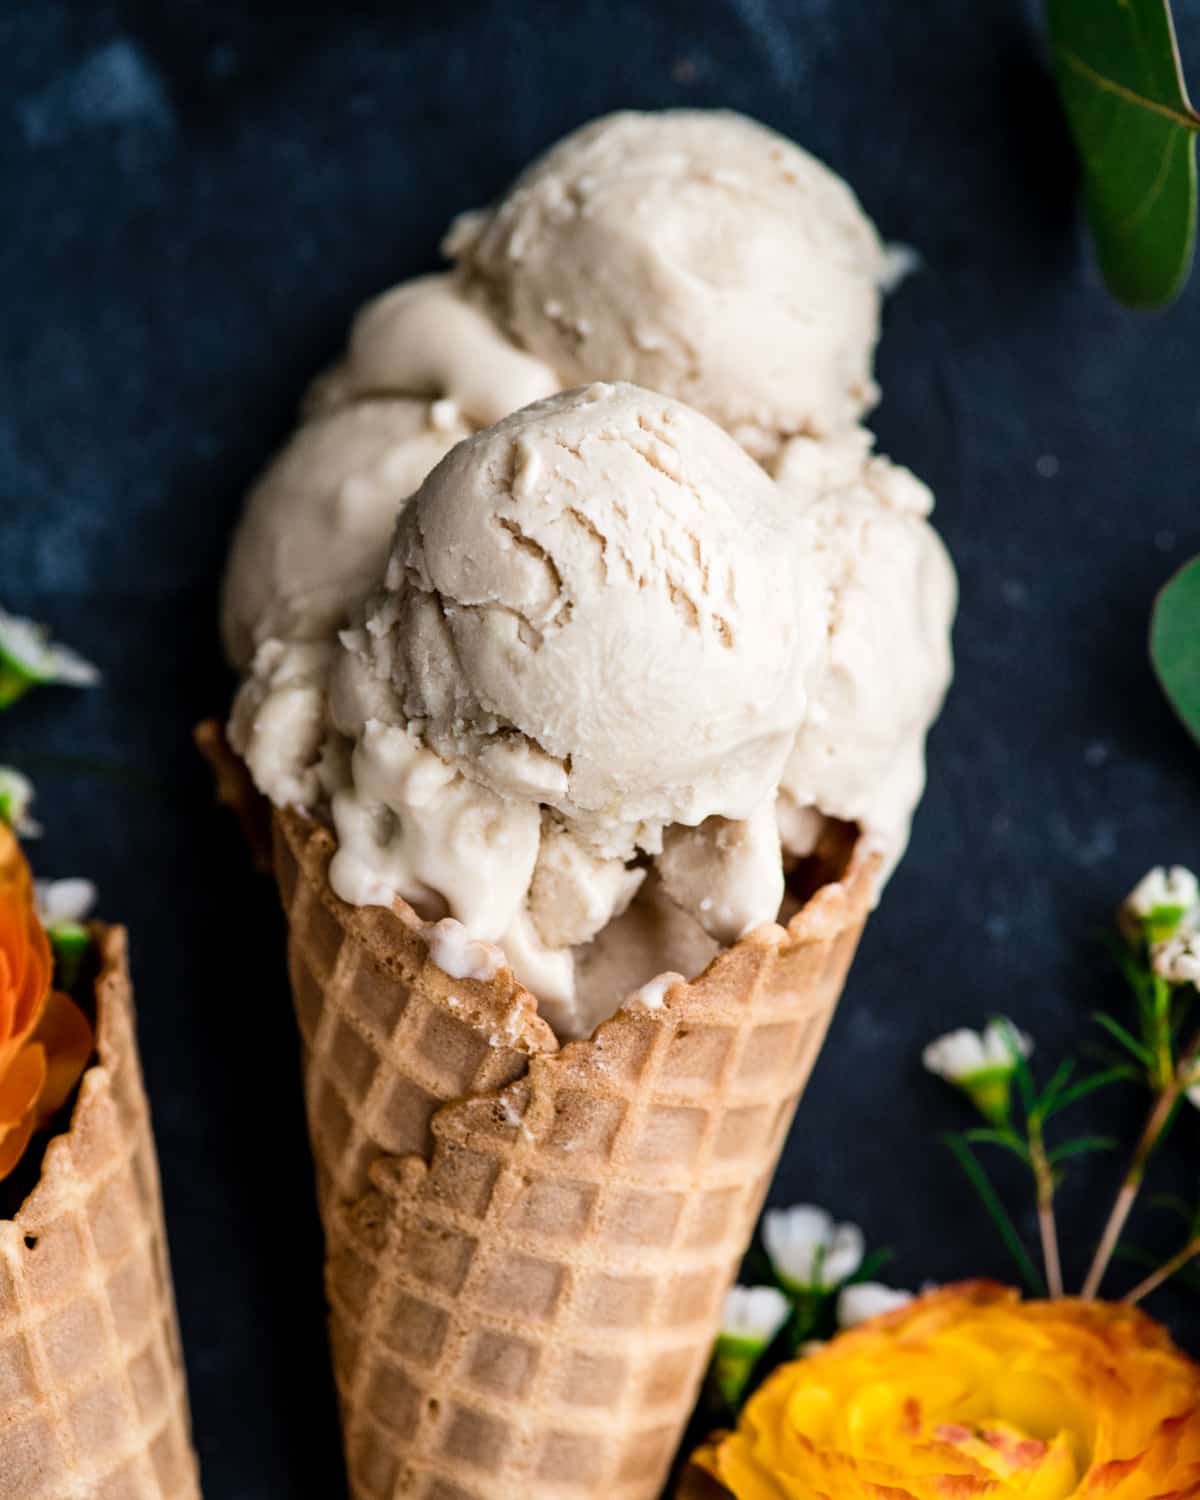 https://joyfoodsunshine.com/wp-content/uploads/2018/05/paleo-dairy-free-vanilla-ice-cream-recipe-11.jpg